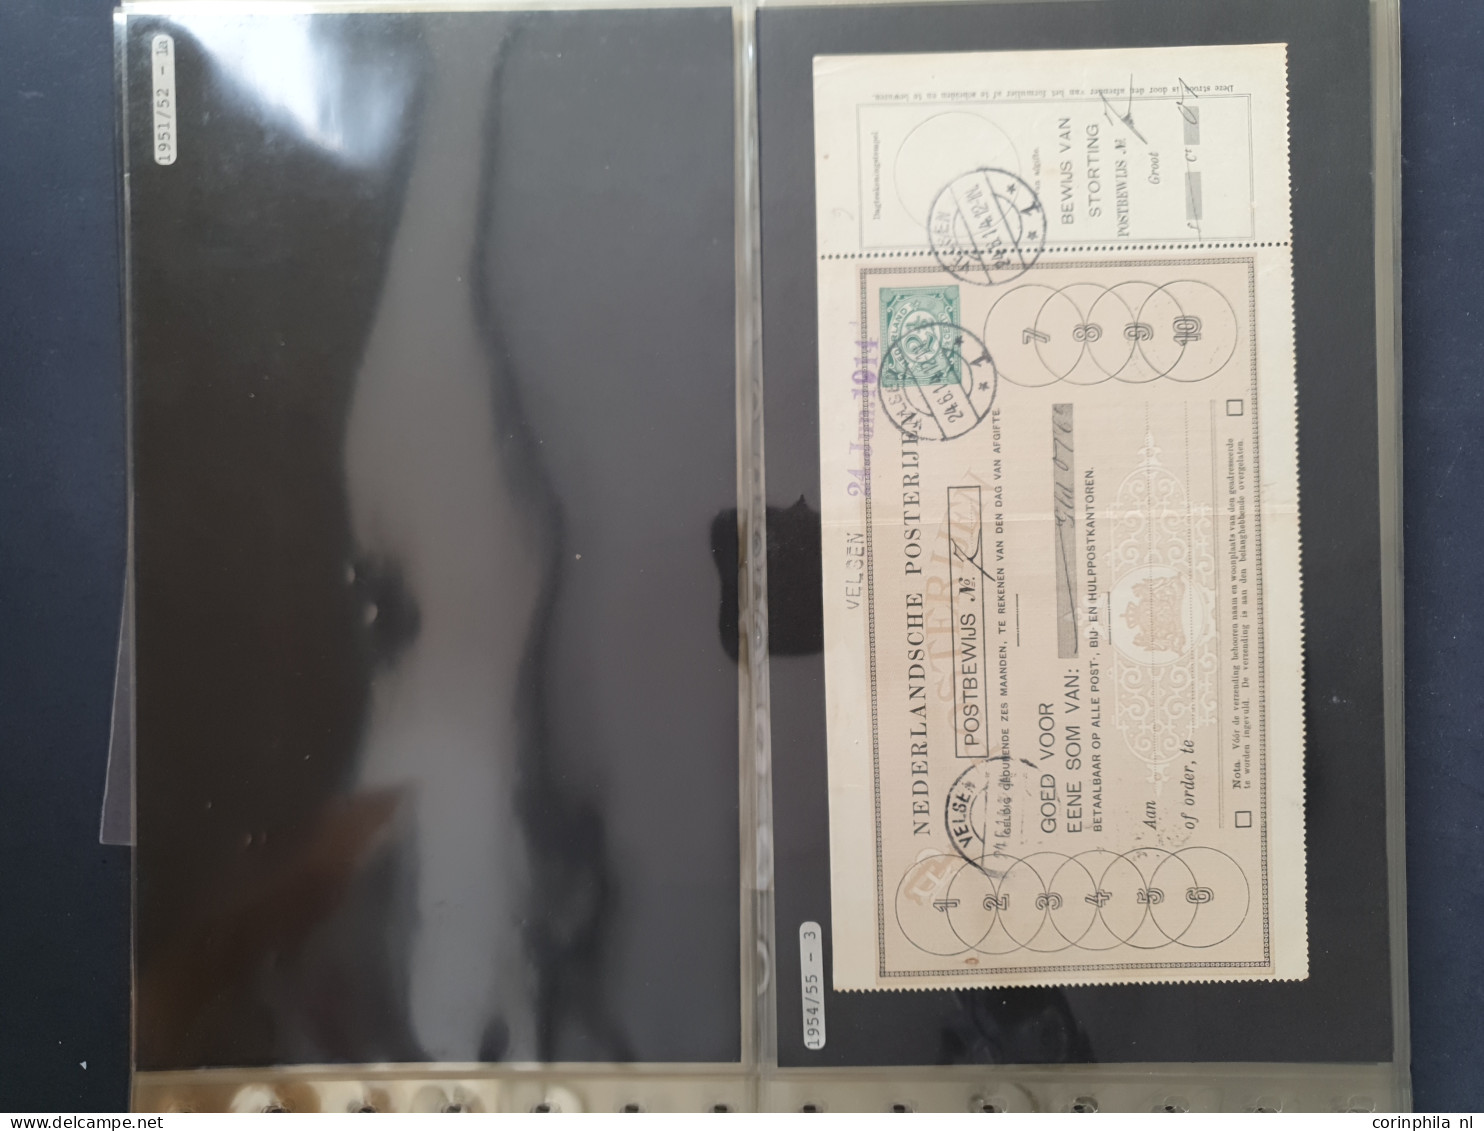 Cover 1884-1955 postbewijzen gebruikt en ongebruikt (ca. 100 ex.) w.b. betere ex. (o.a. G1), doubletten (vooral nr. G25)